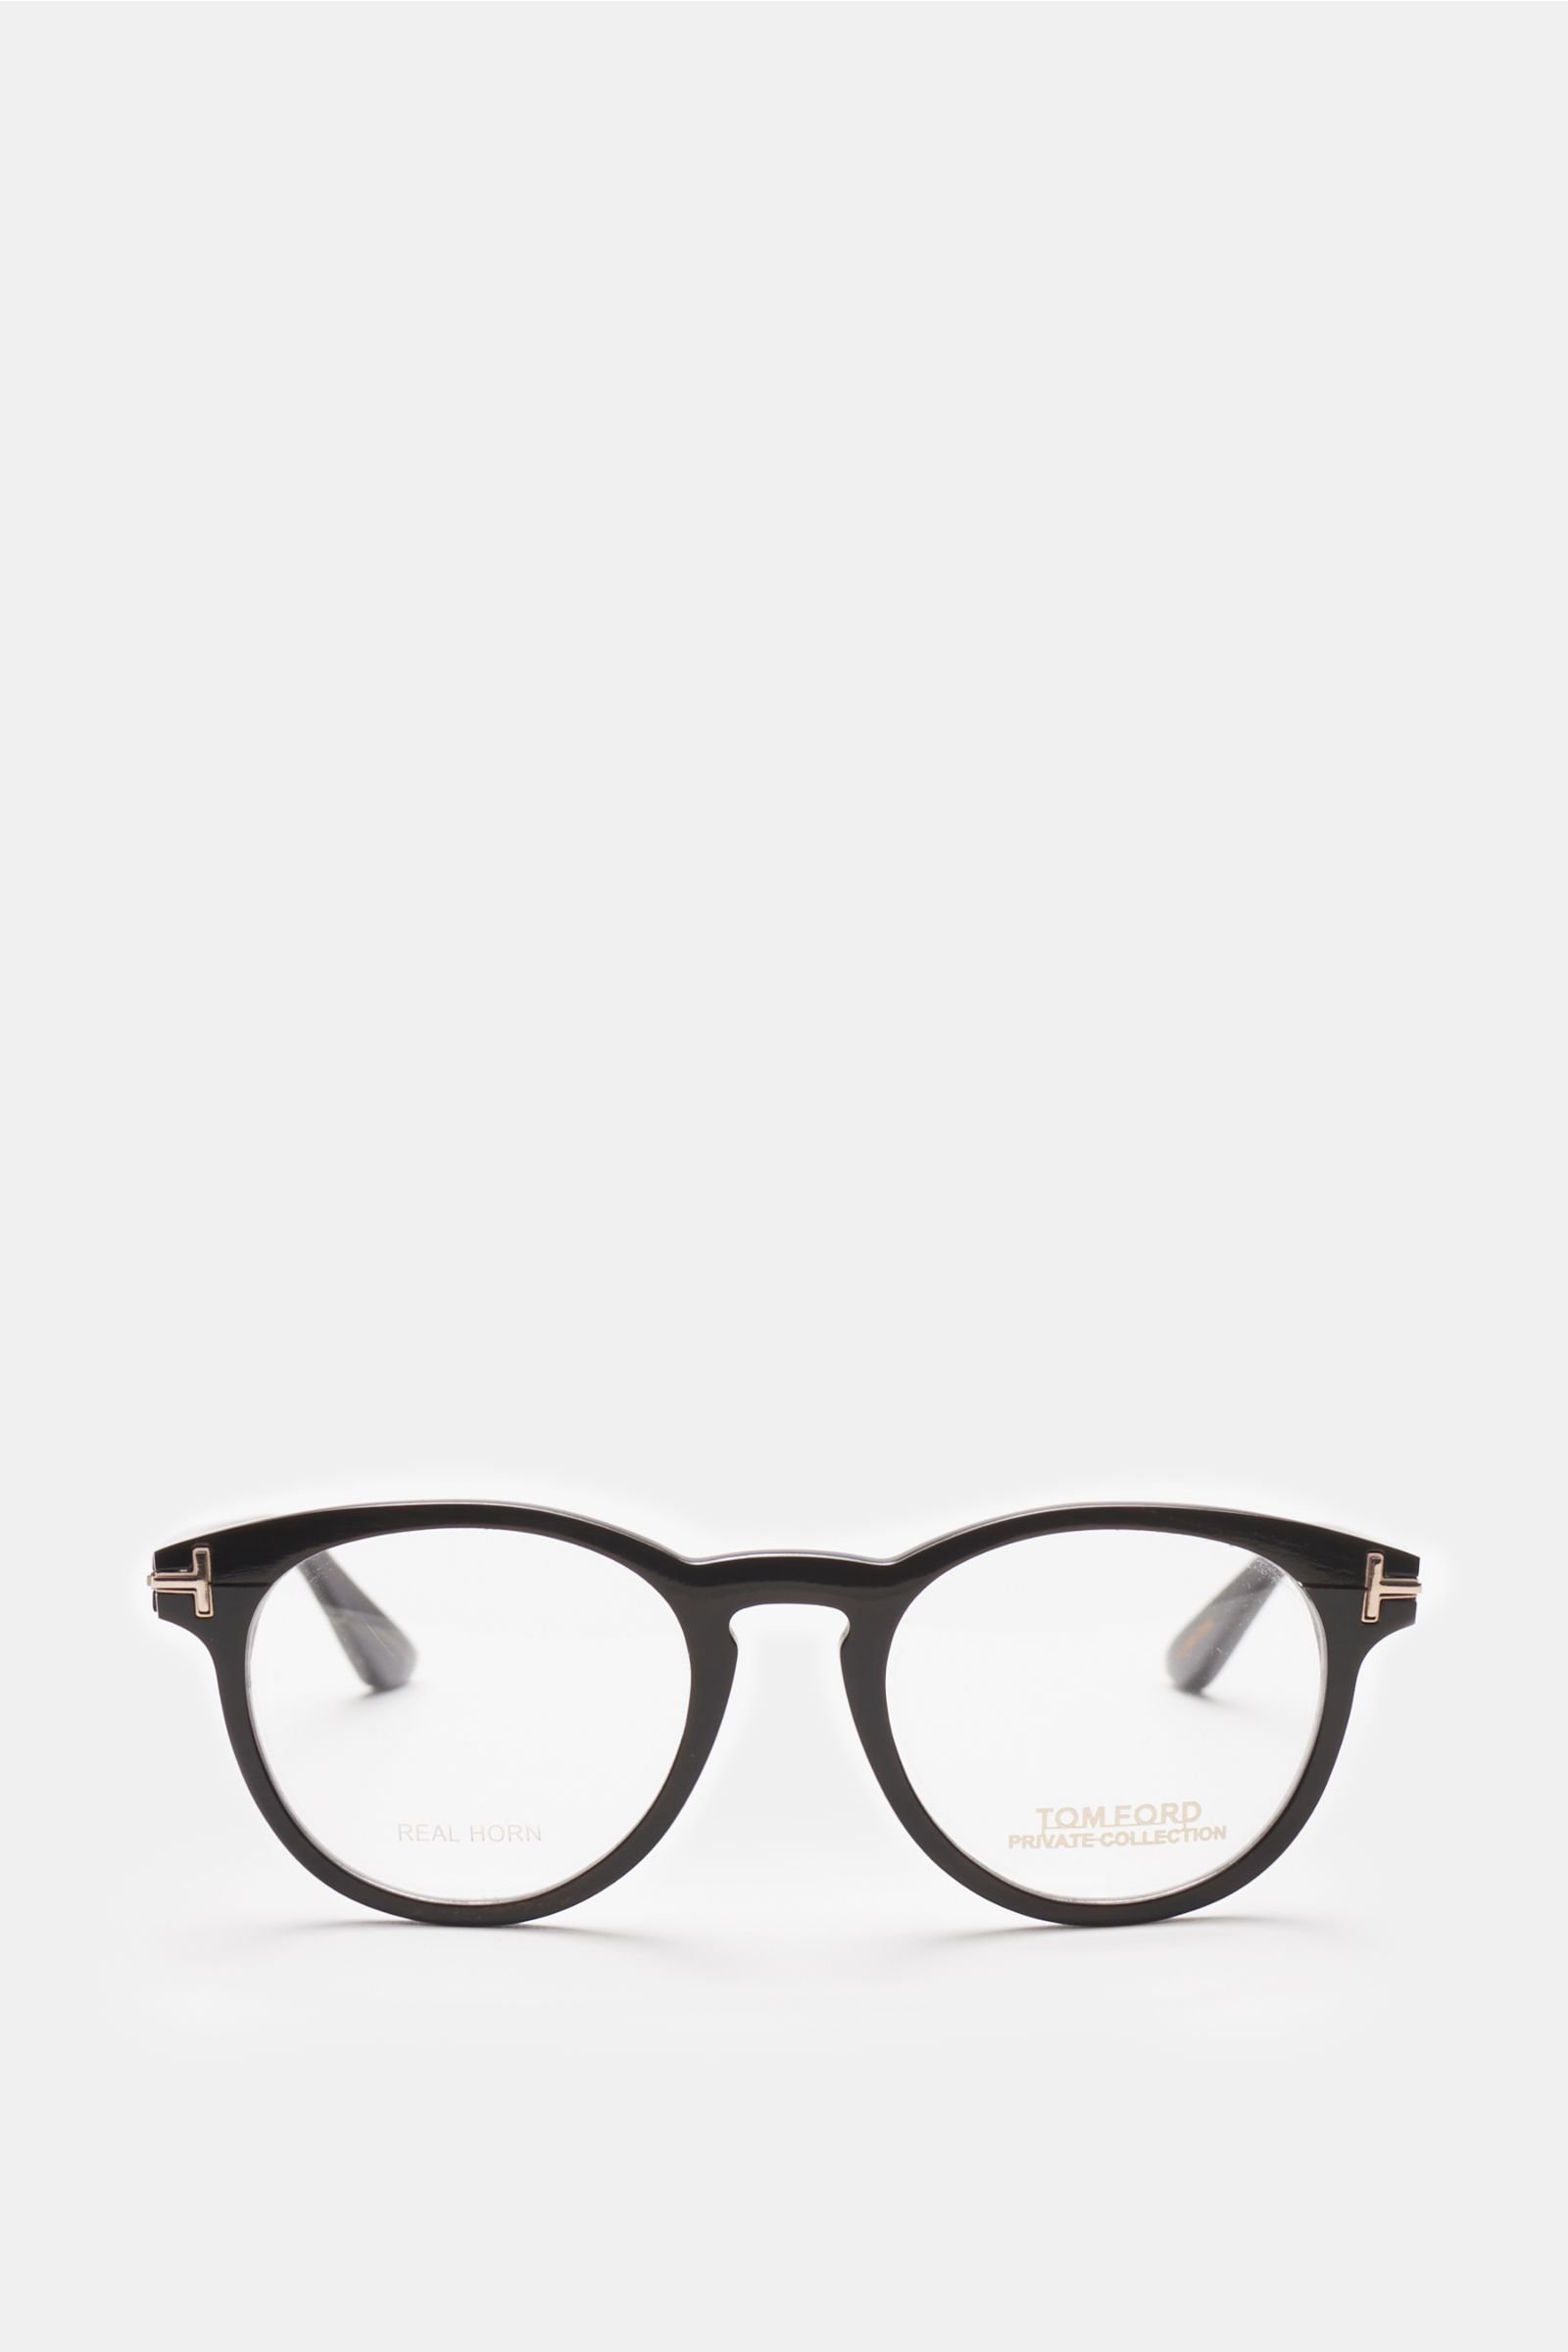 TOM FORD glasses frame 'Round Horn Optical' black | BRAUN Hamburg